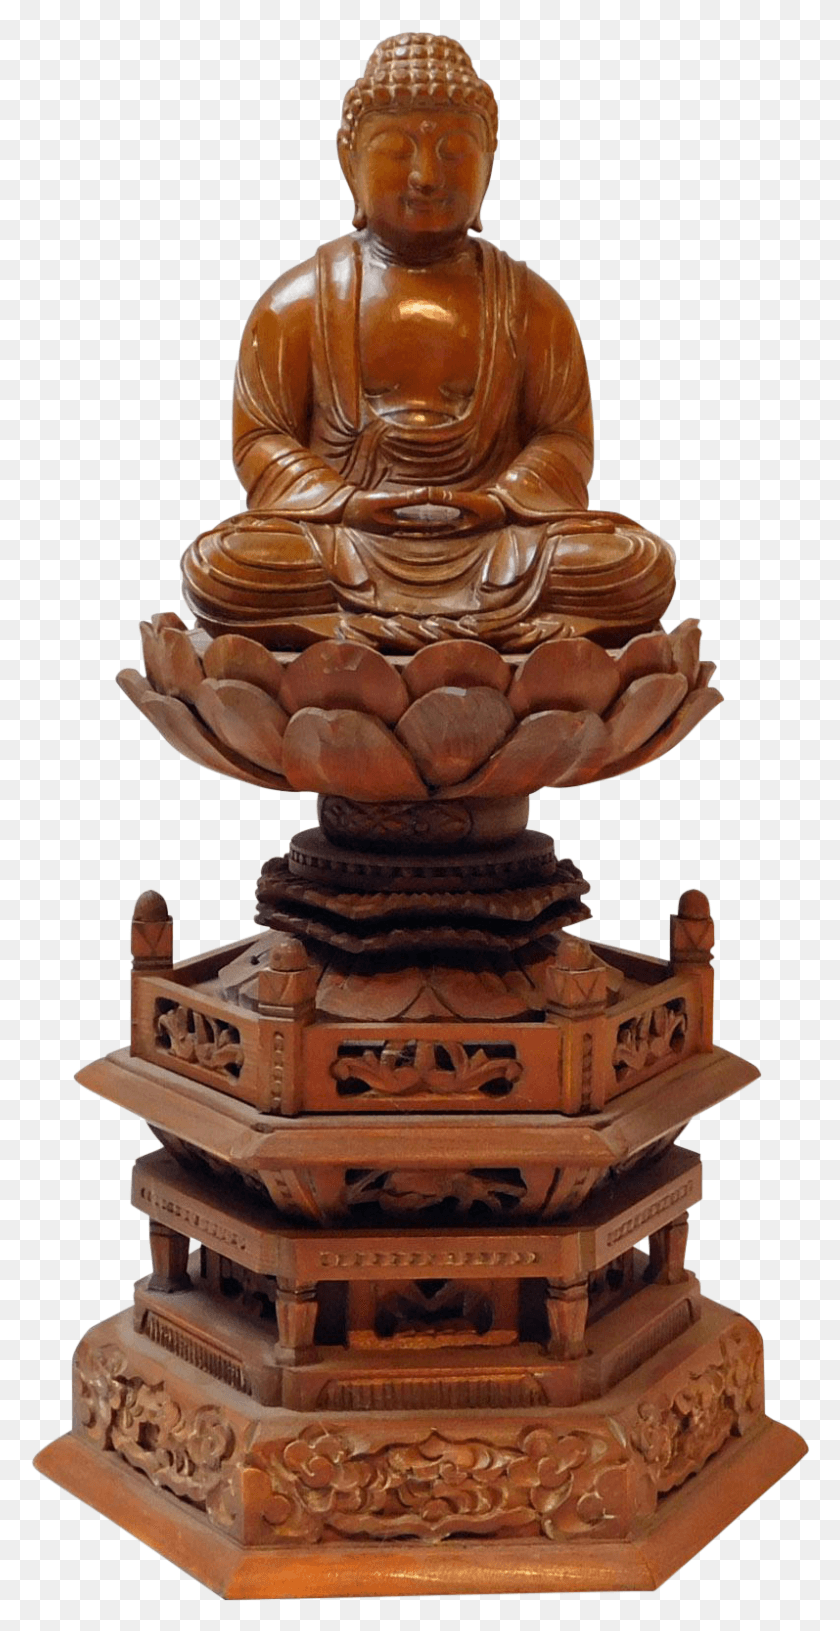 797x1606 Dibujo De La Figura De Buda Gautama Buda, Mesa, Muebles, Pastel De Boda Hd Png